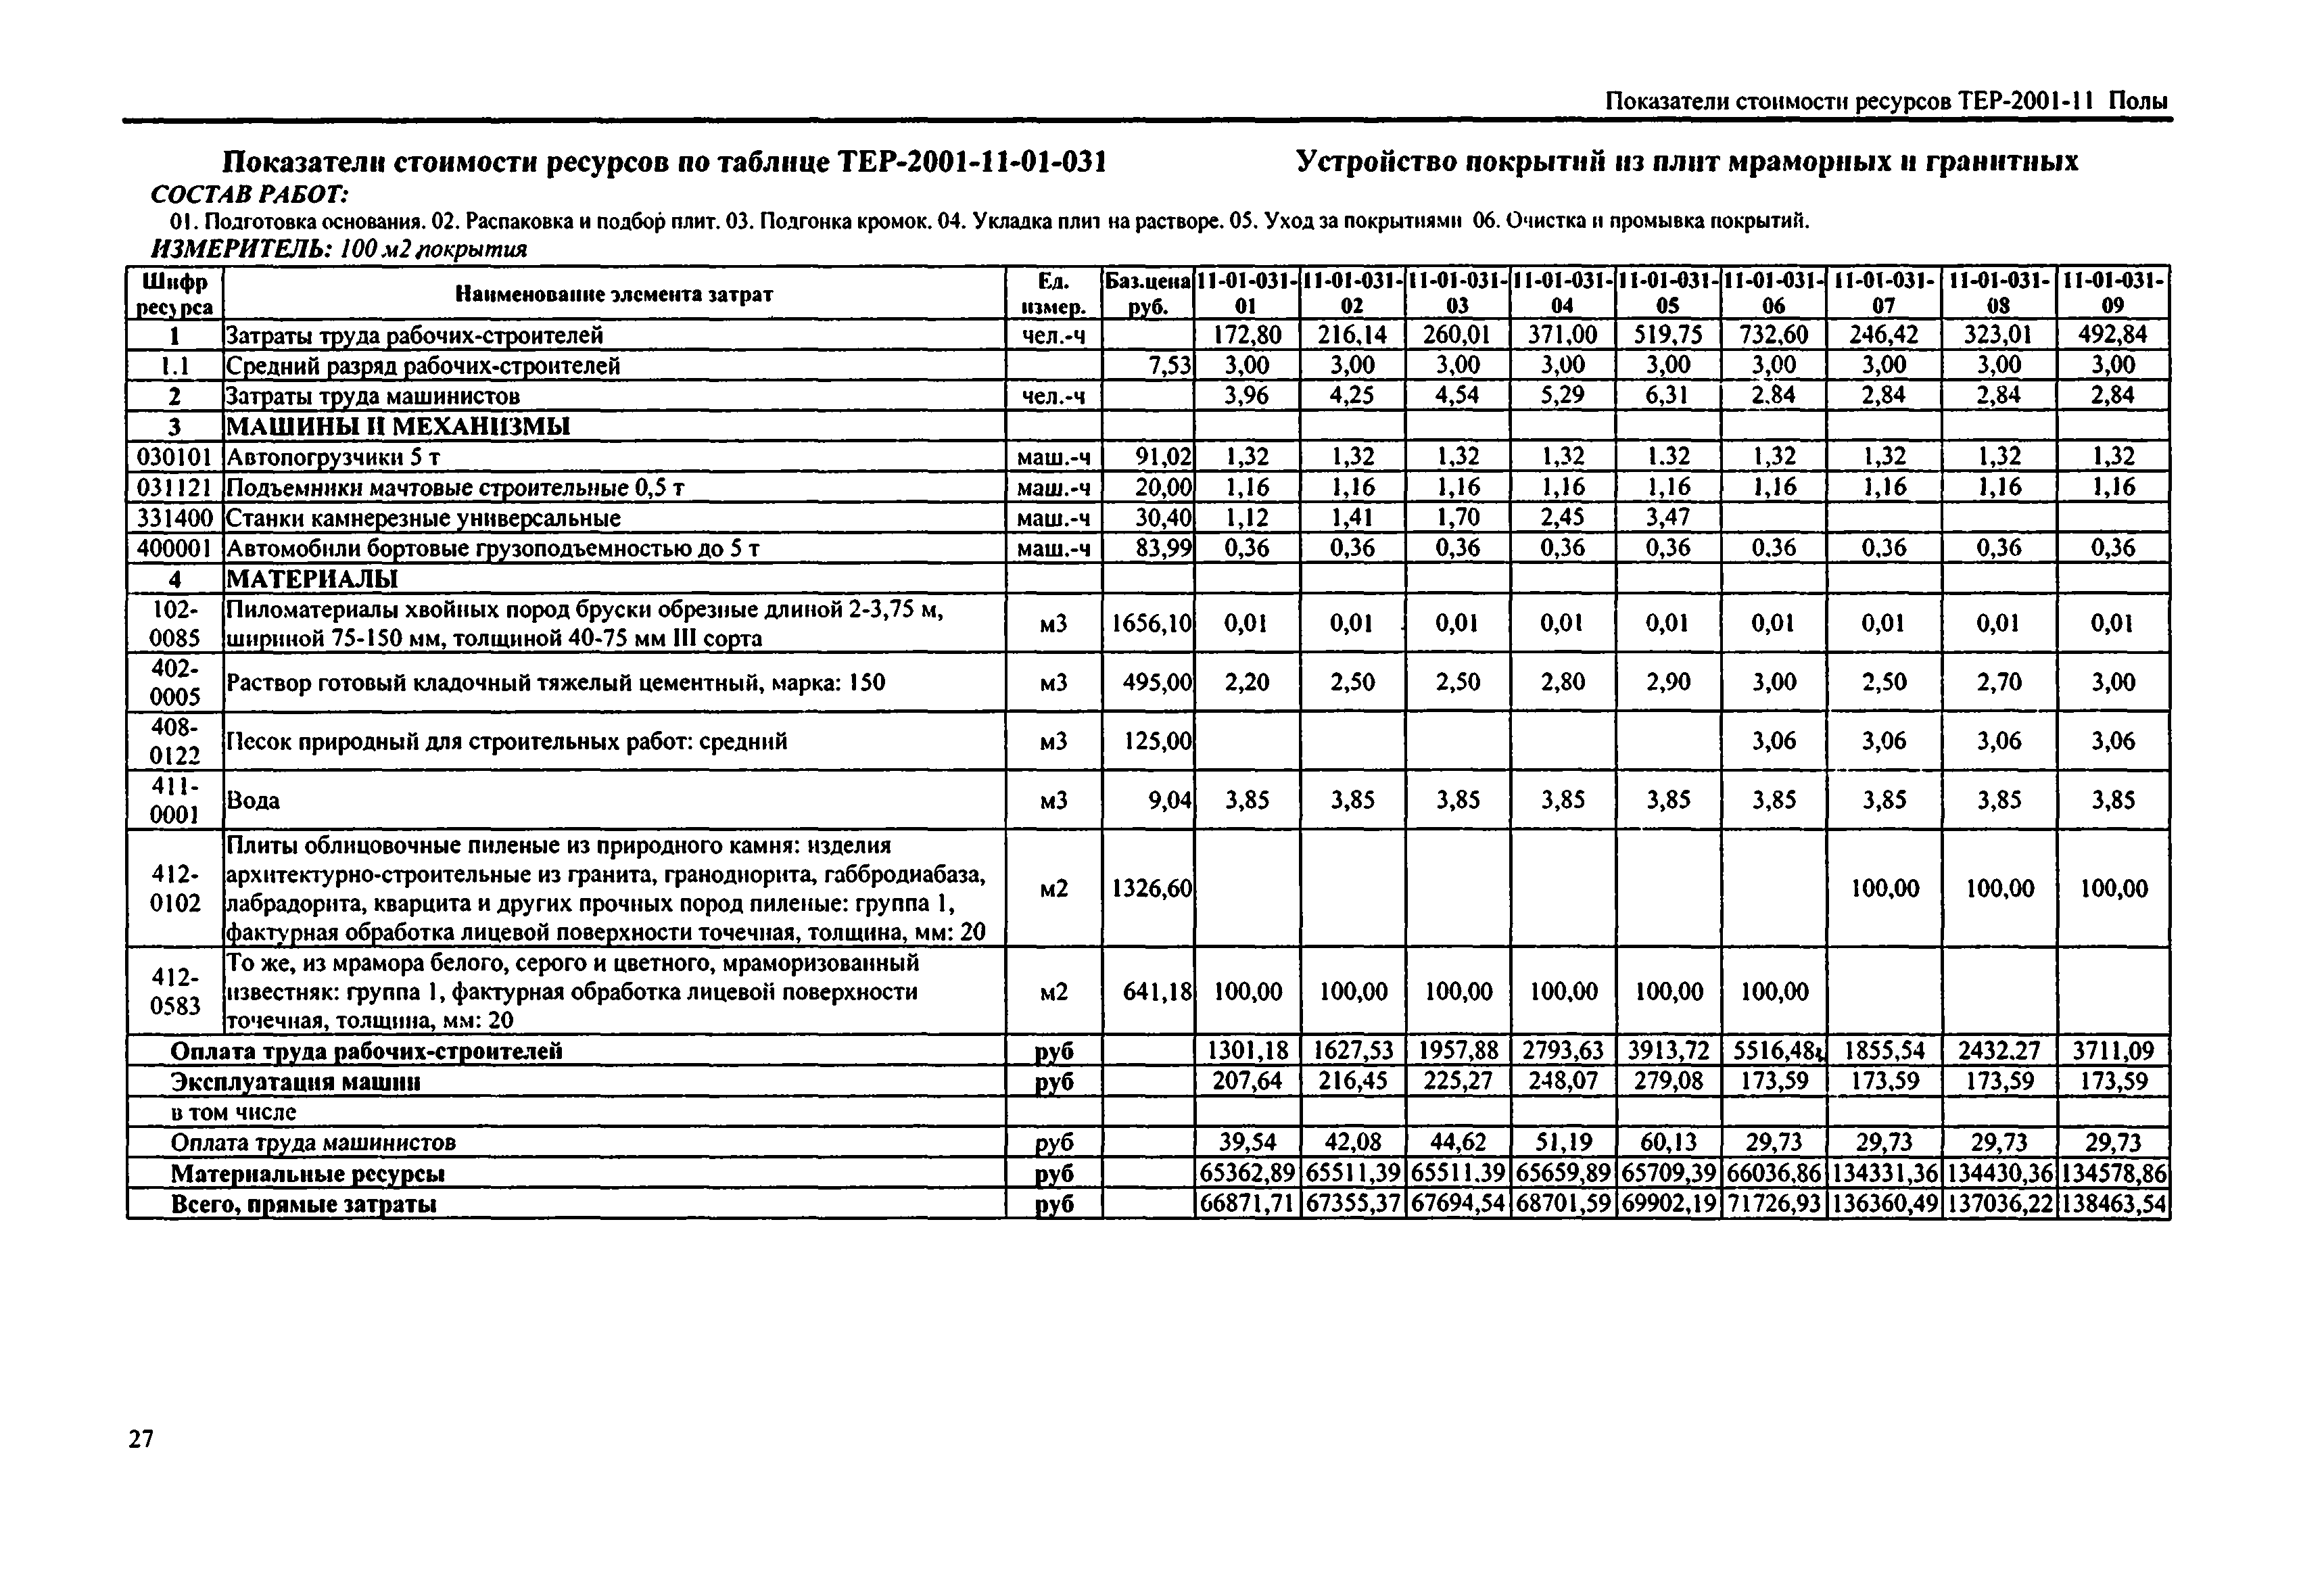 Справочное пособие к ТЕР 81-02-11-2001